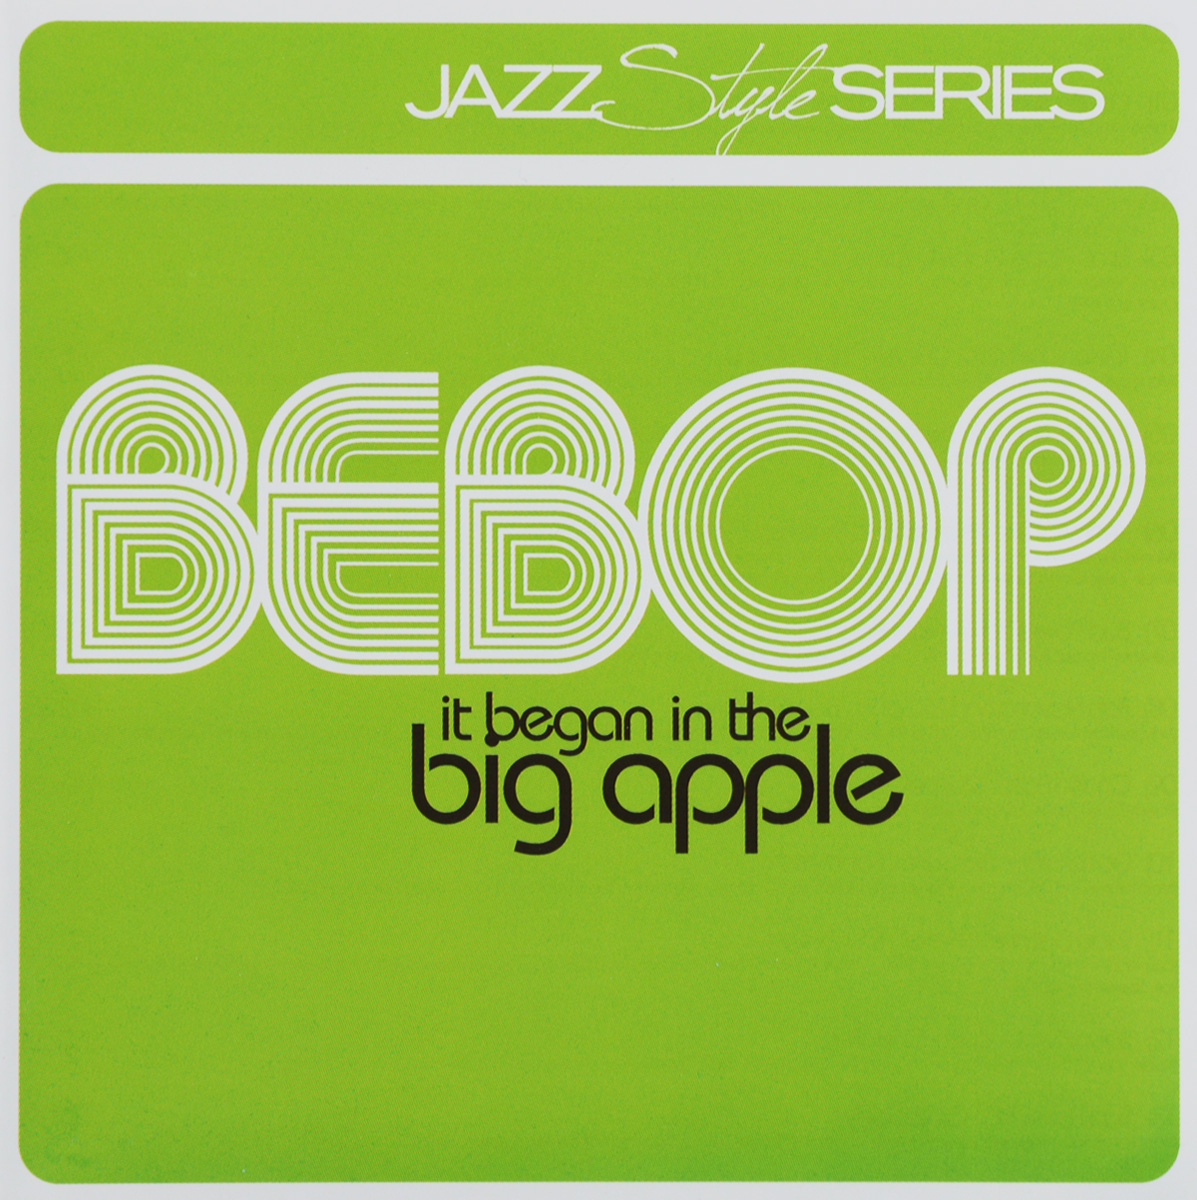 Jazz Style Series. Bebop It Began In The Big Apple (2 CD)